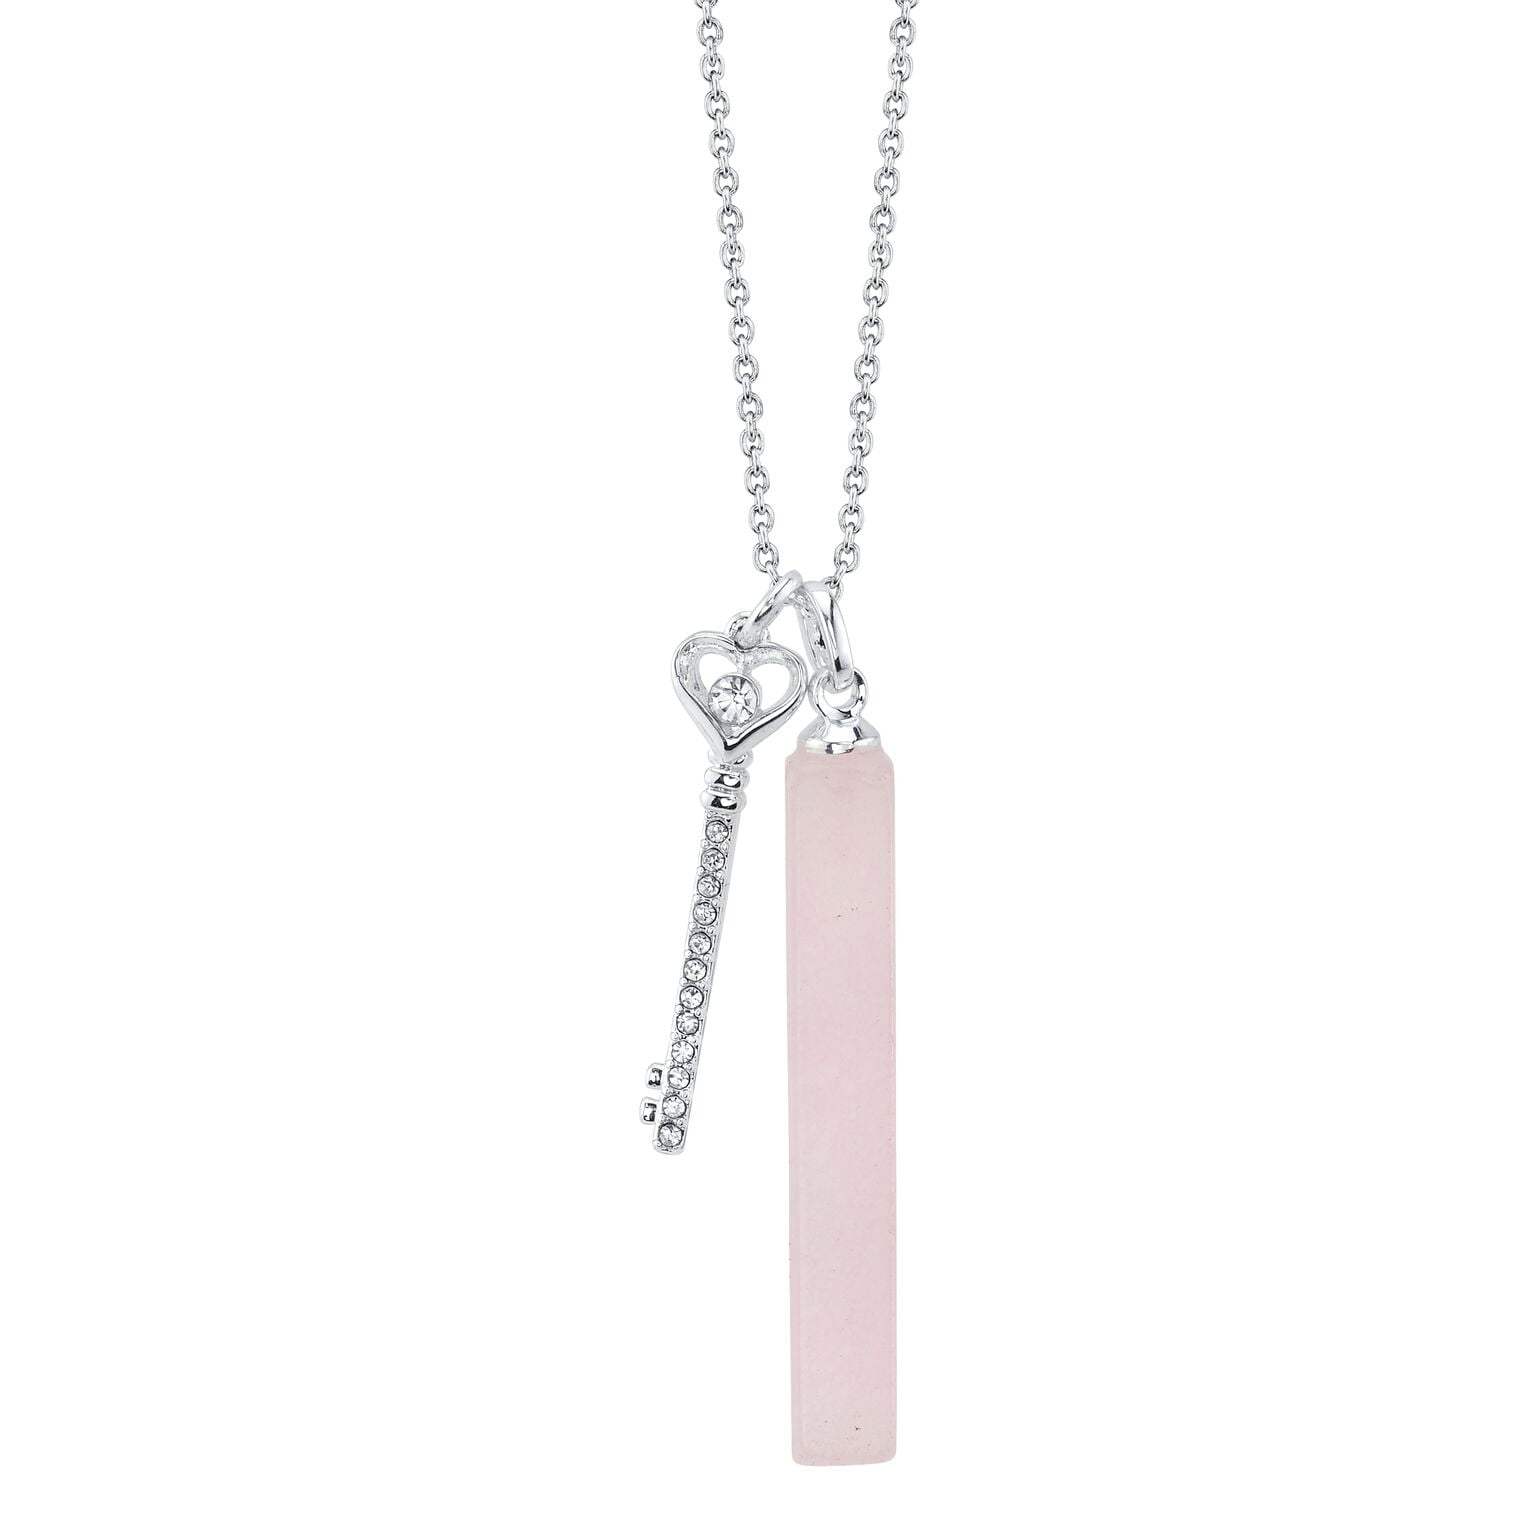 rose quartz pendant,natural rose quartz pendant,rose quartz,quartz gemstone pendant,925 silver pendant